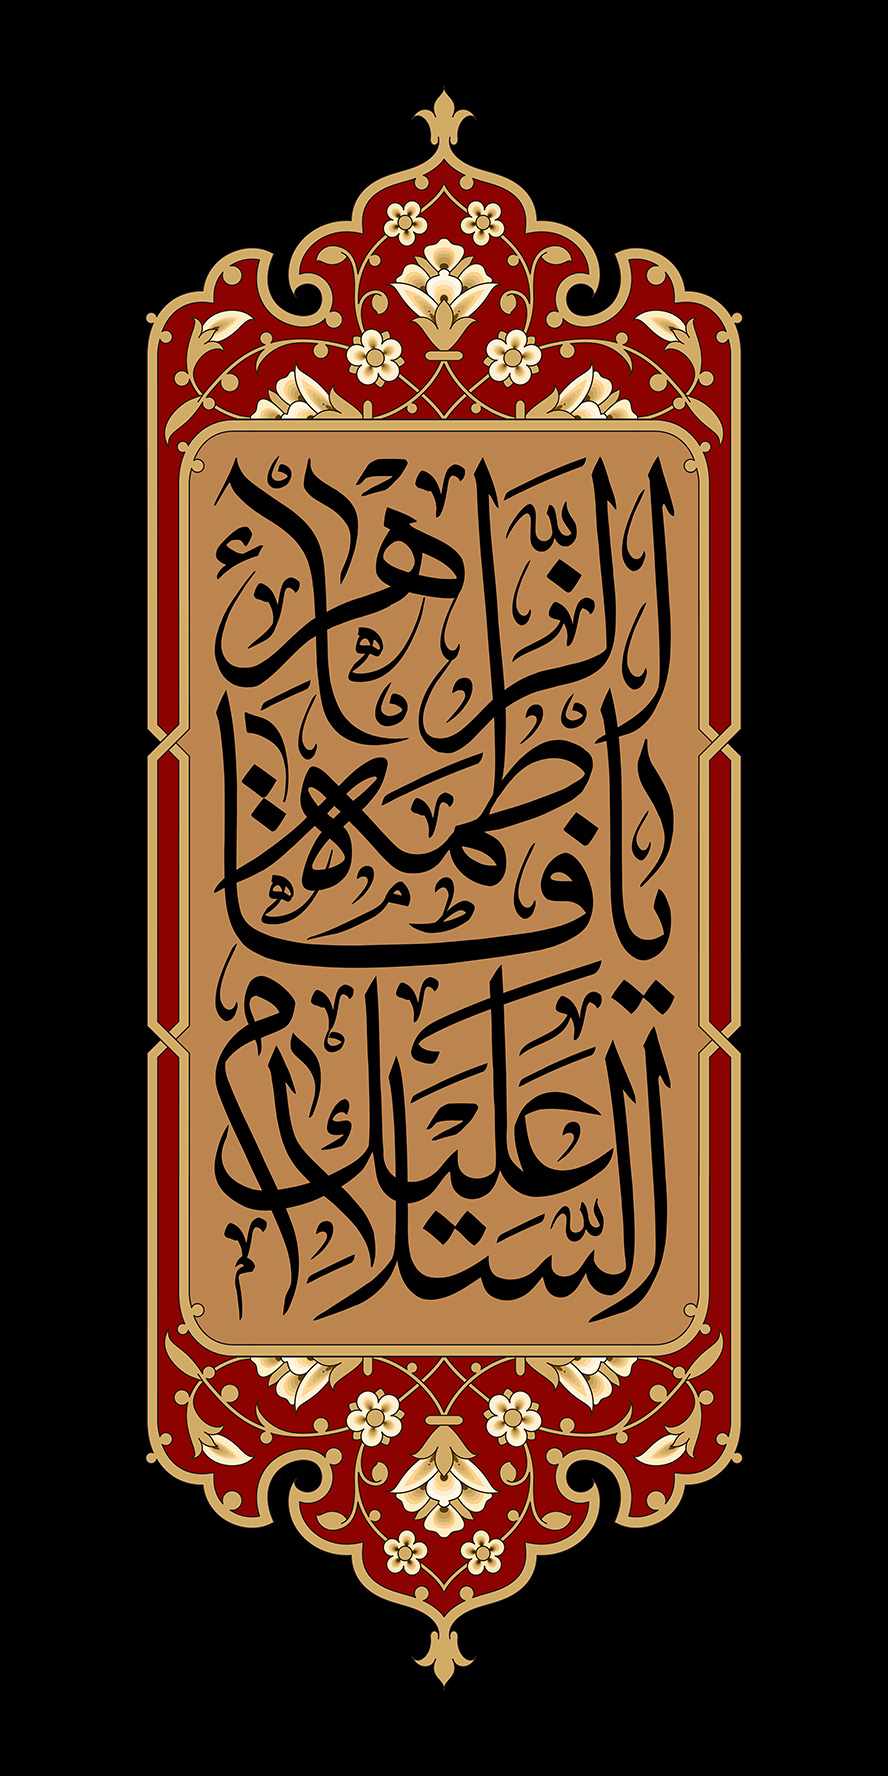 عکس با کیفیت پس زمینه مشکی و قاب زیبا به رنگ زرشکی و تزئین شده با خطوط اسلیمی و متن السلام علیک یا فاطمه الزهرا (س) در وسط قاب